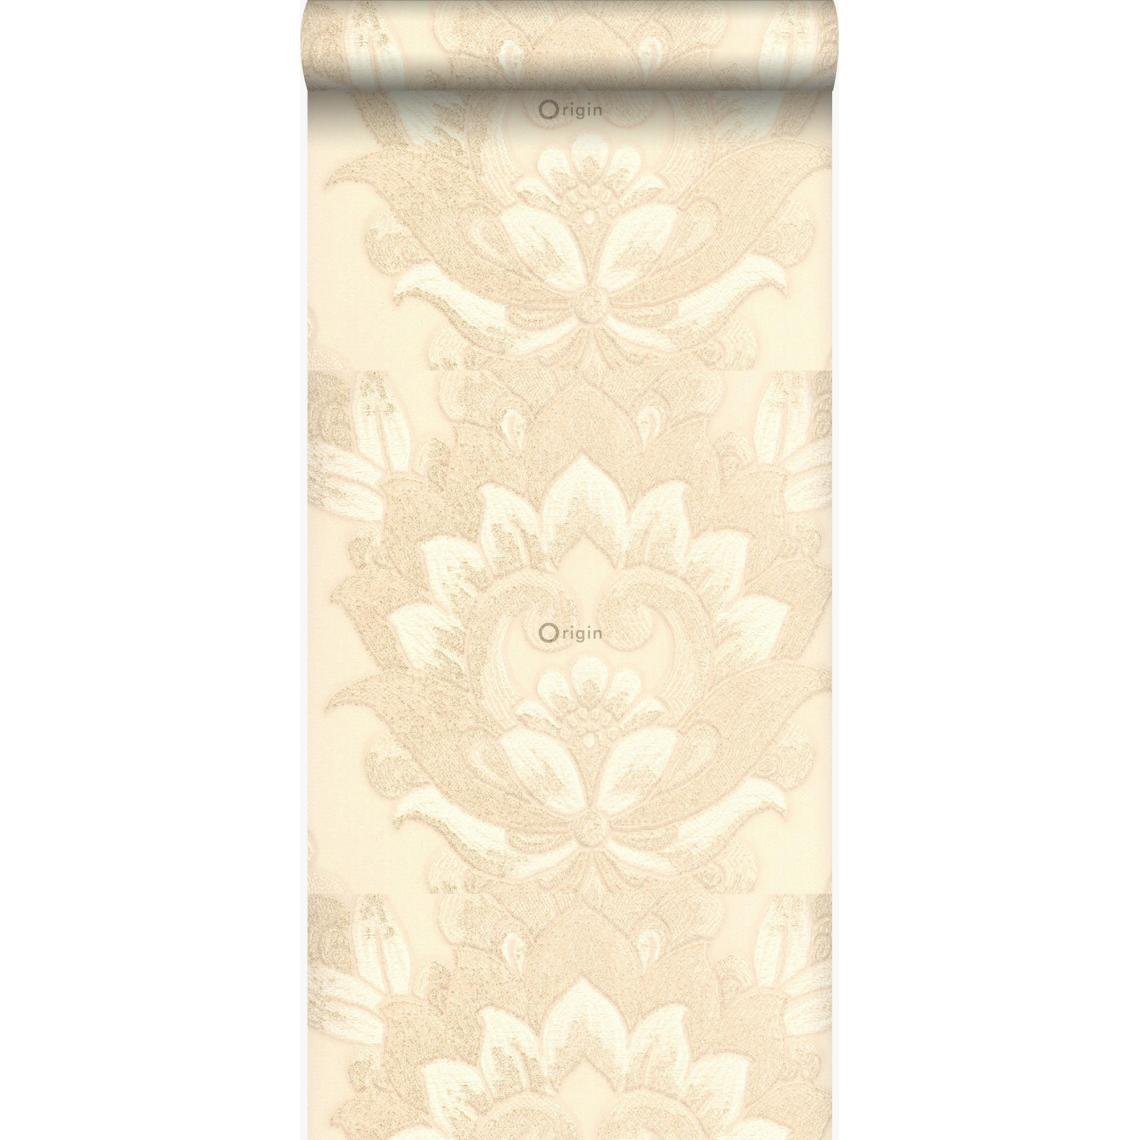 Origin - Origin papier peint ornements beige champagne - 306736 - 70 cm x 10,05 m - Papier peint